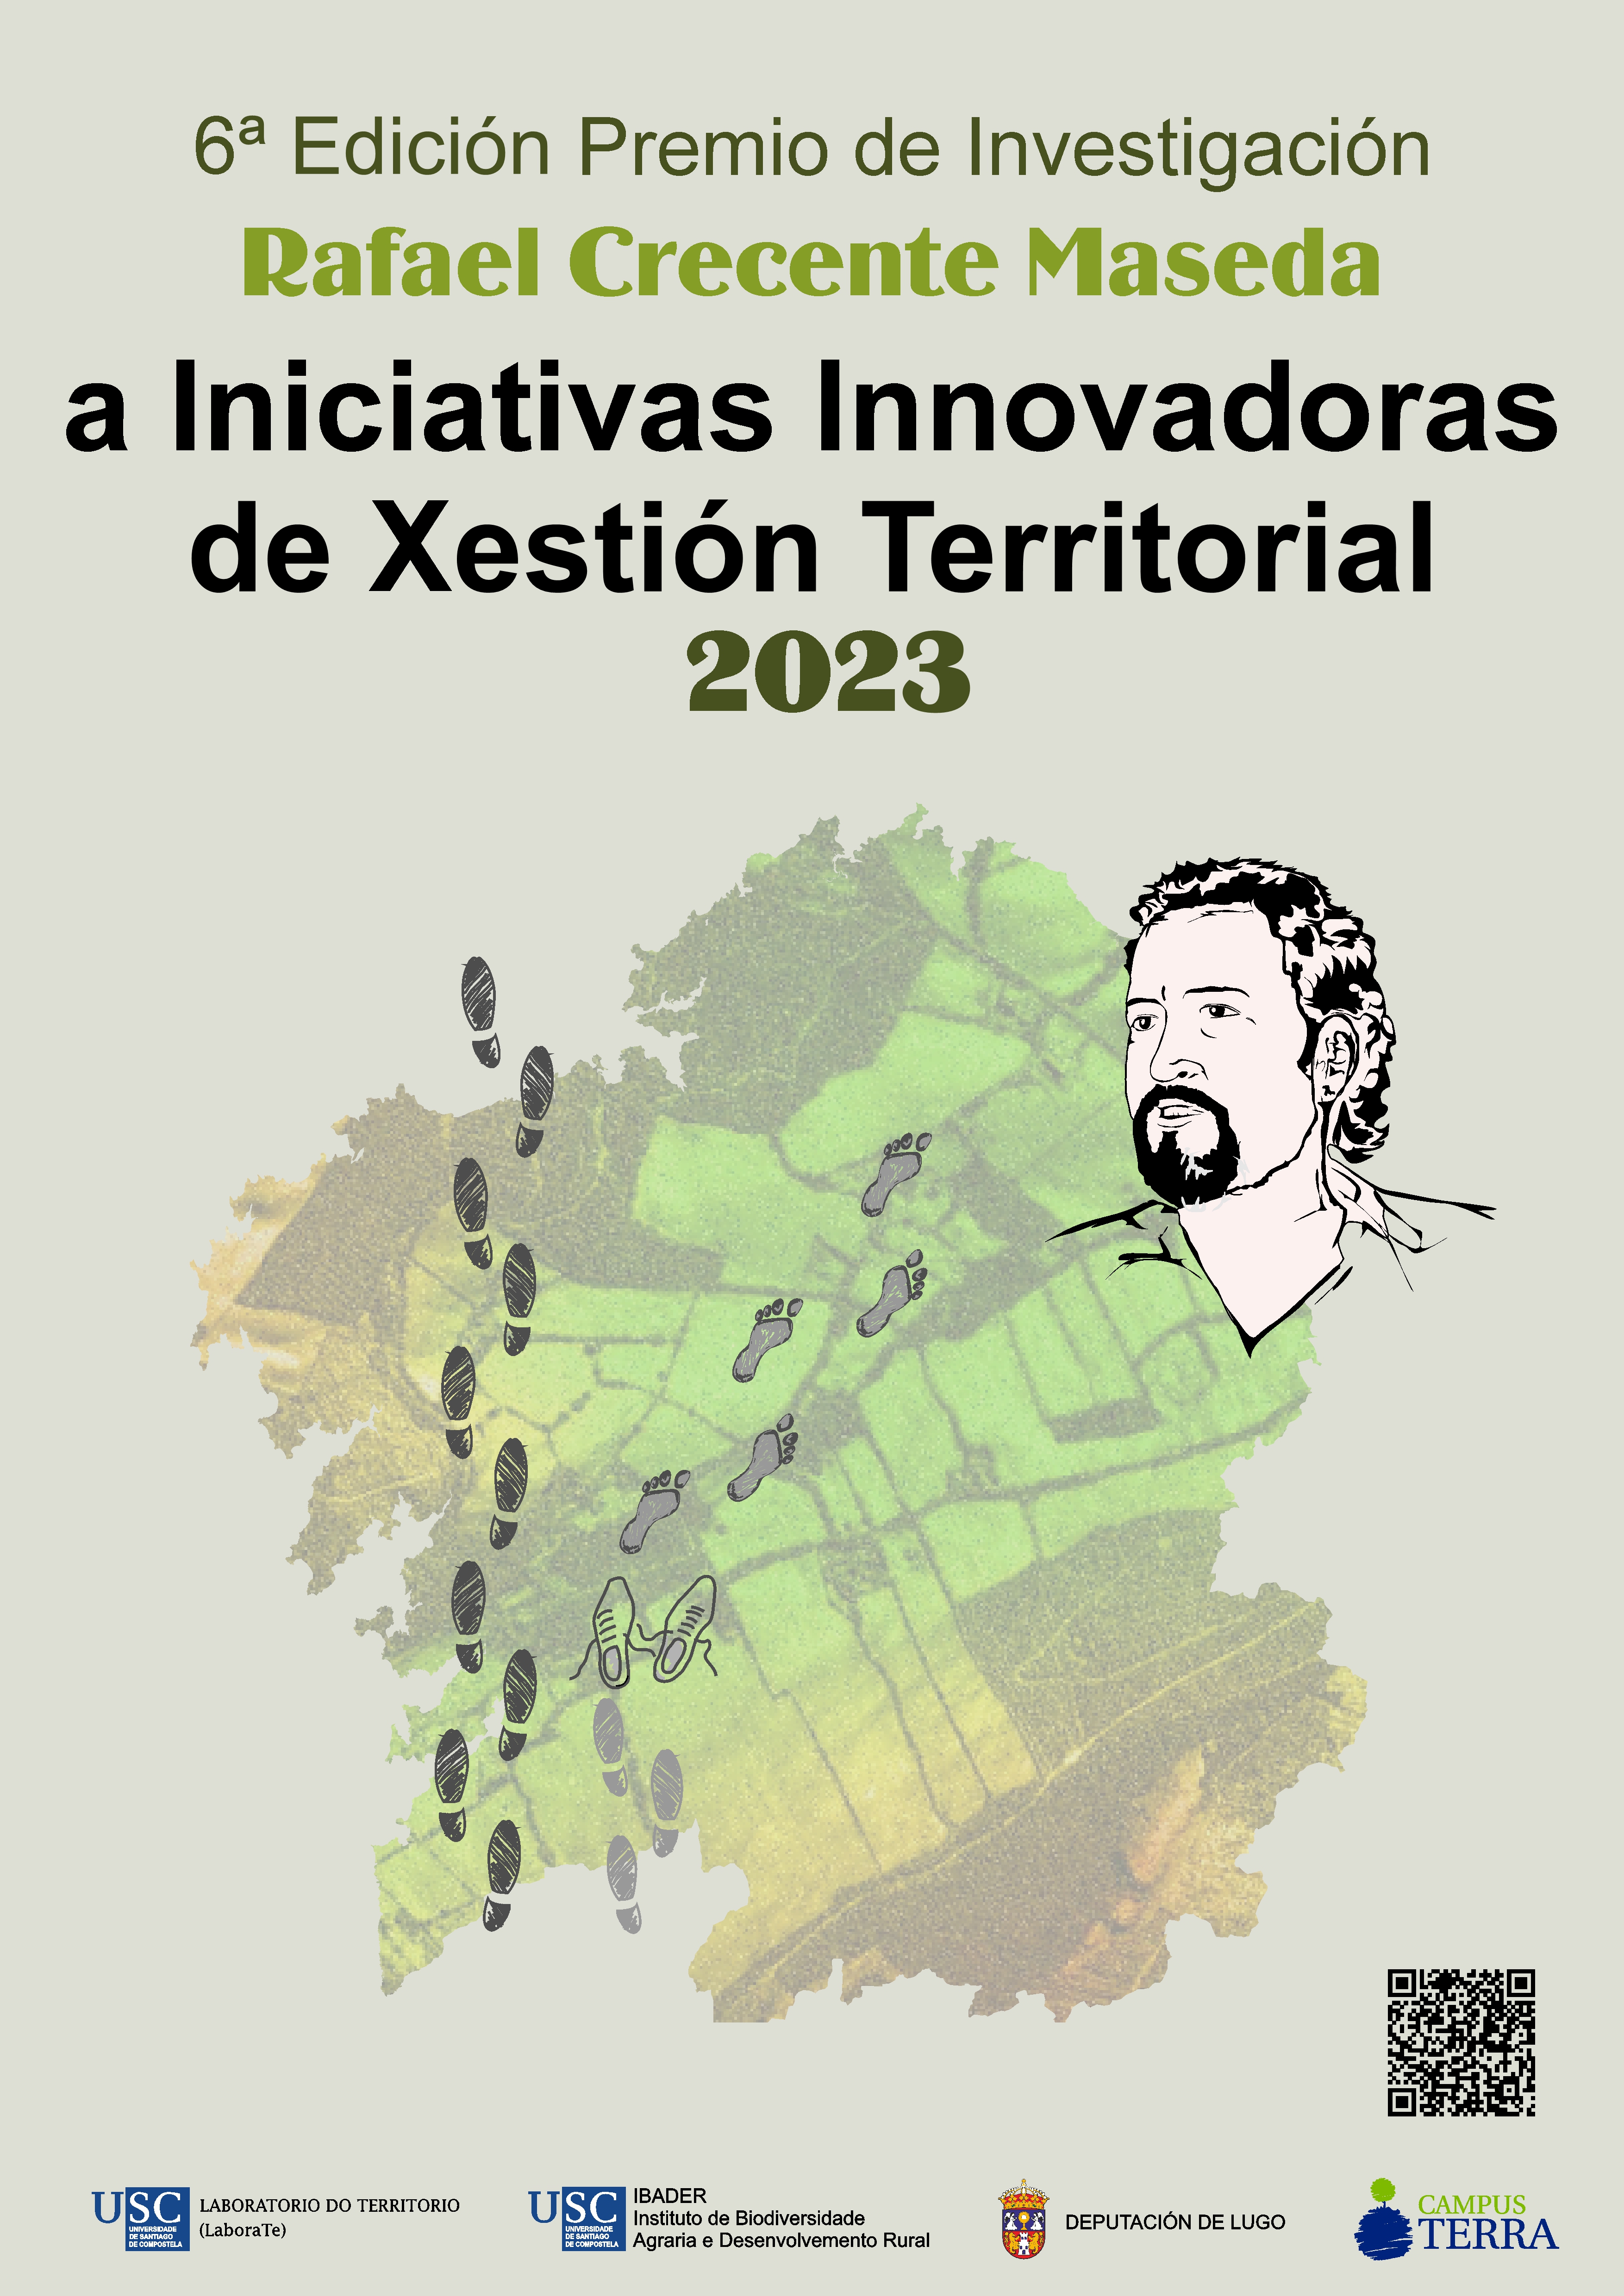 2023/11/28.- Acto de Entrega Premios Rafael Crecente de Investigación (2023)